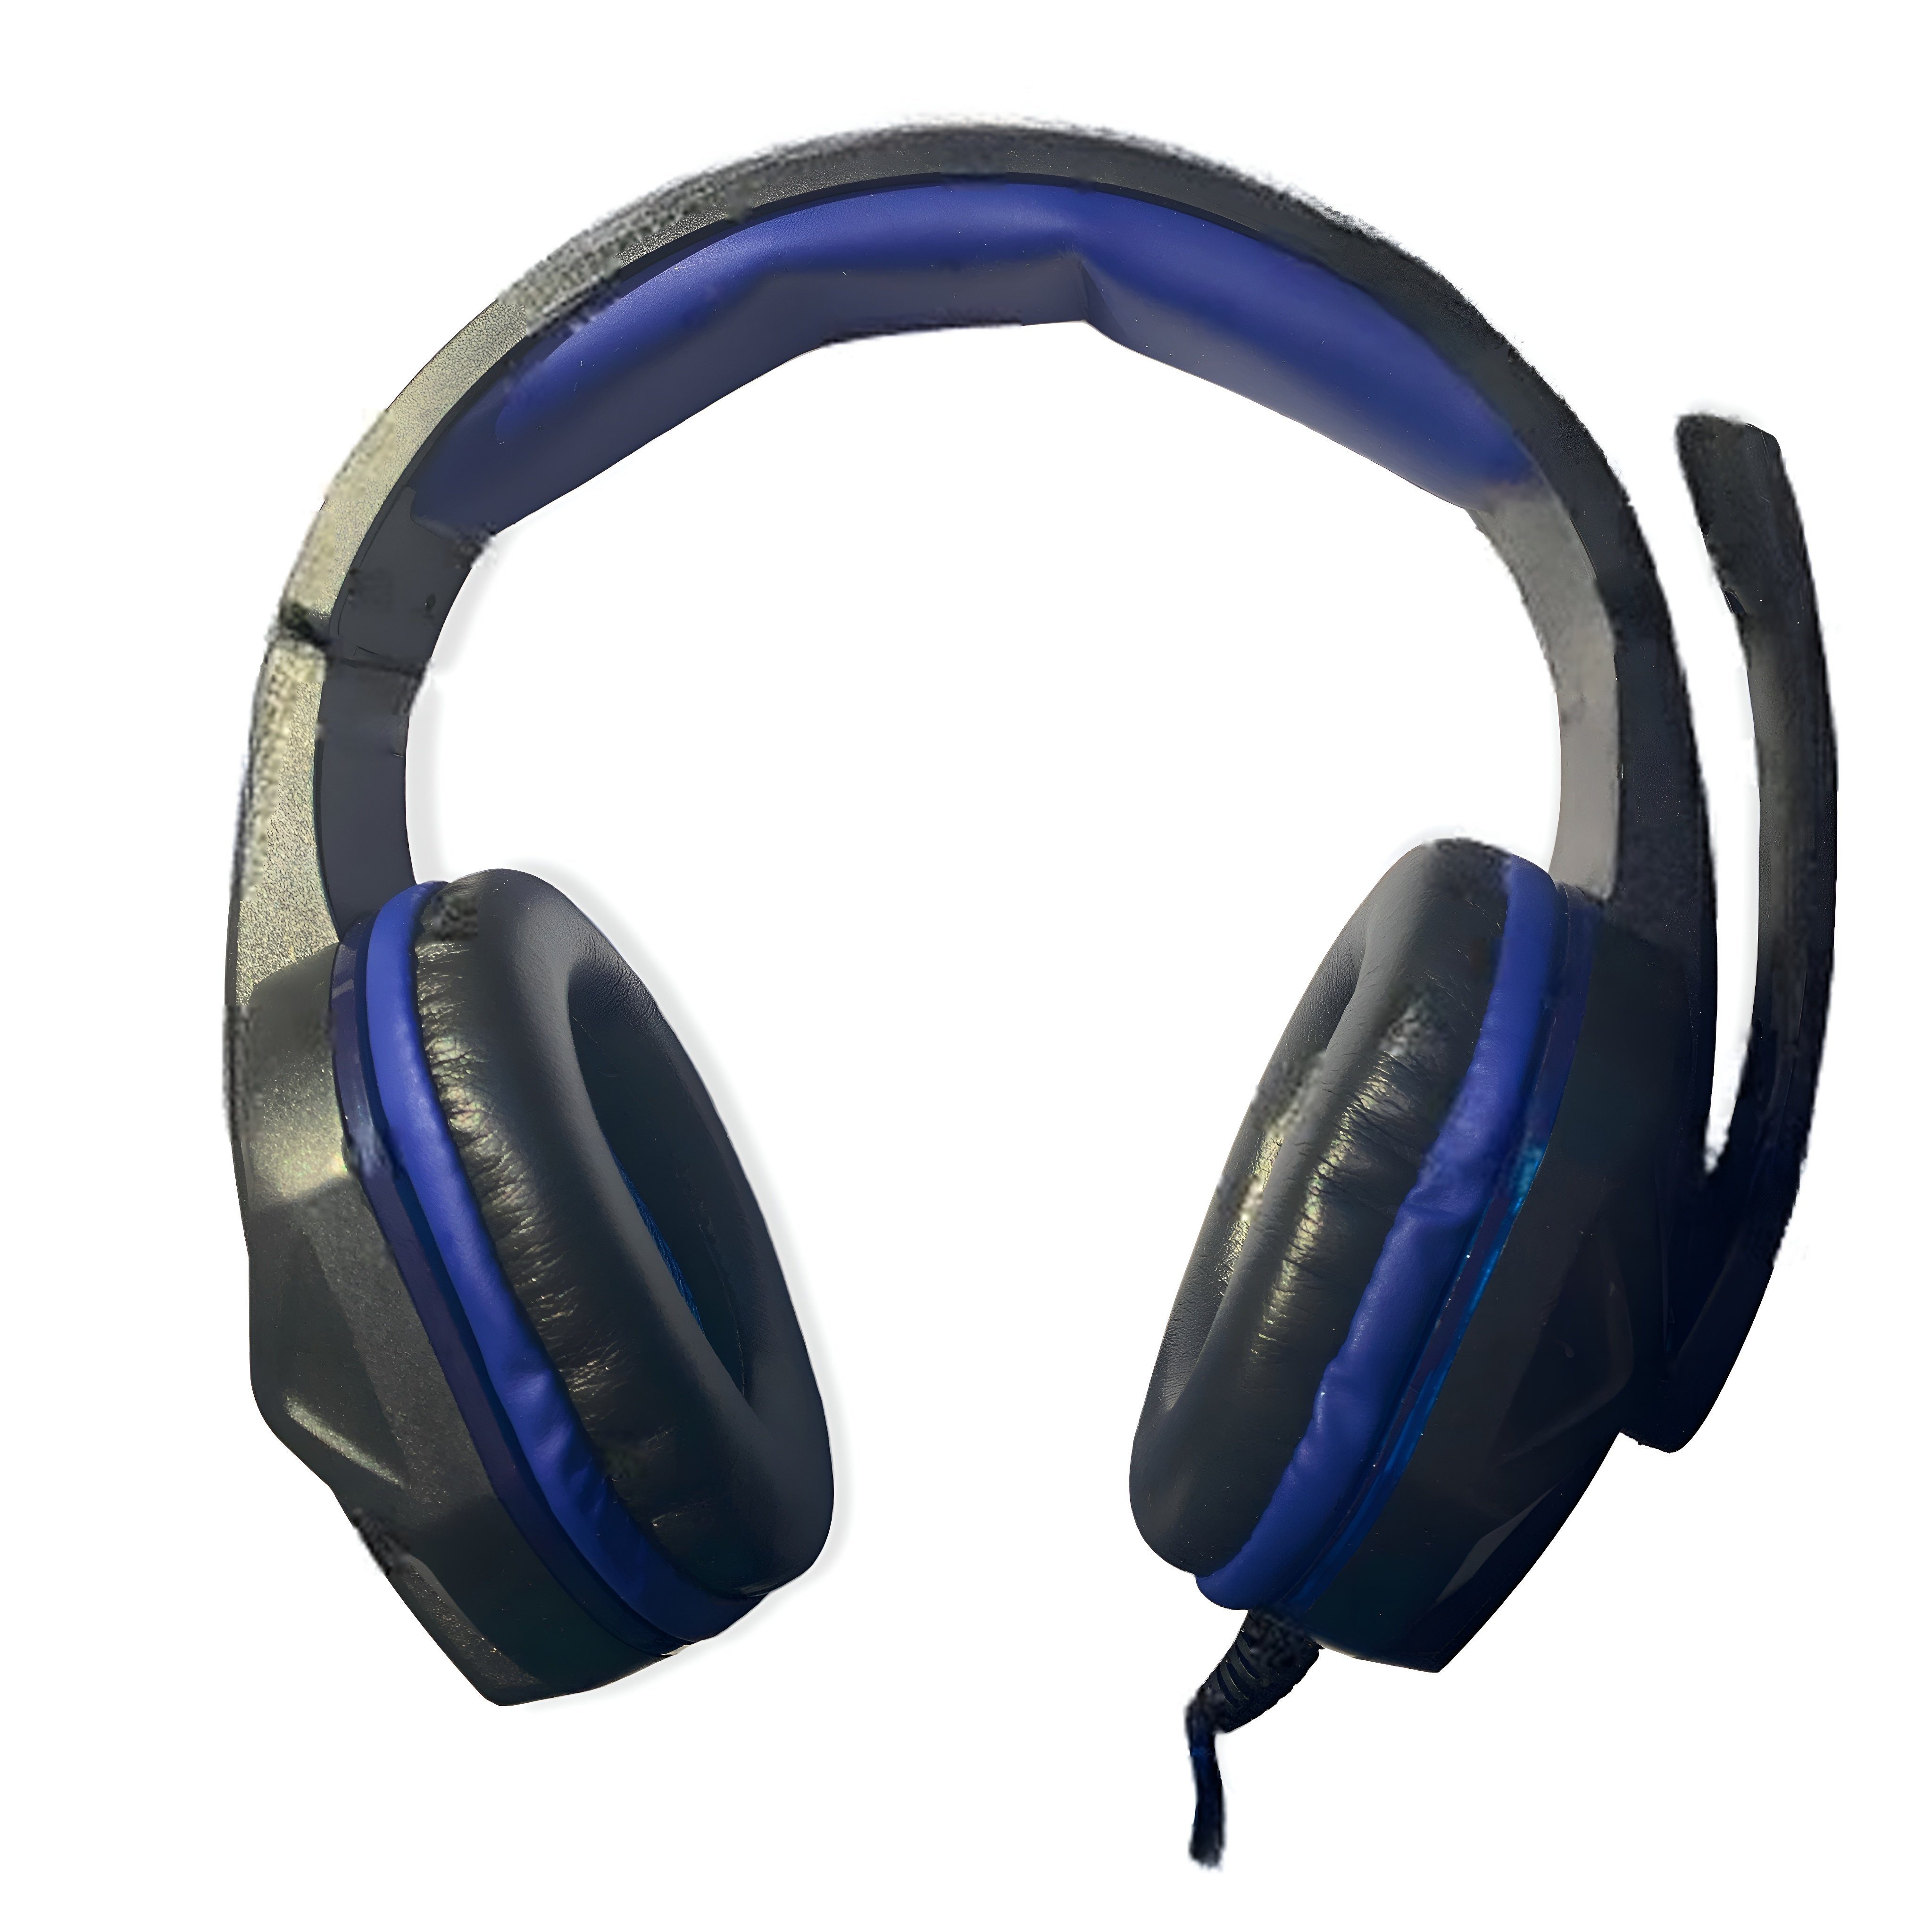 EISENZ EZ-202 Kopfhörer Bluetooth Gaming Headset mit Mikrofon Gaming-Headset  (Wired, Stereo, RGB, Klarer Sound, bequemer Tragekomfort, kompatibel mit  Xbox, PS4, PC)